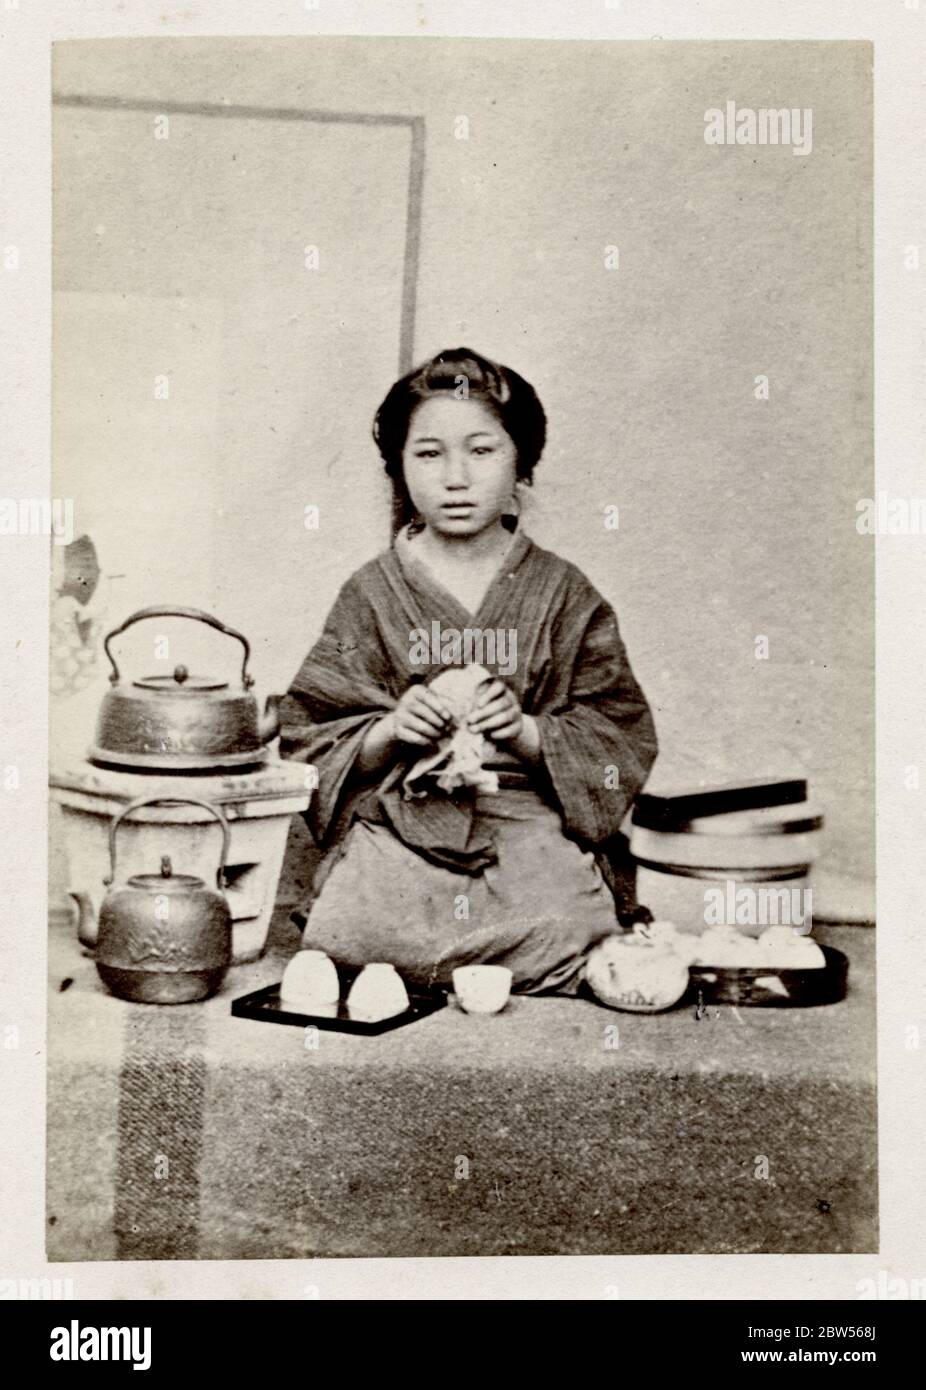 Vintage 19. Jahrhundert Fotografie - frühe fotografische Porträt aus Japan, wahrscheinlich das Werk der japanischen Fotografin Shimooka Renjo - Frau Tee zu machen Stockfoto